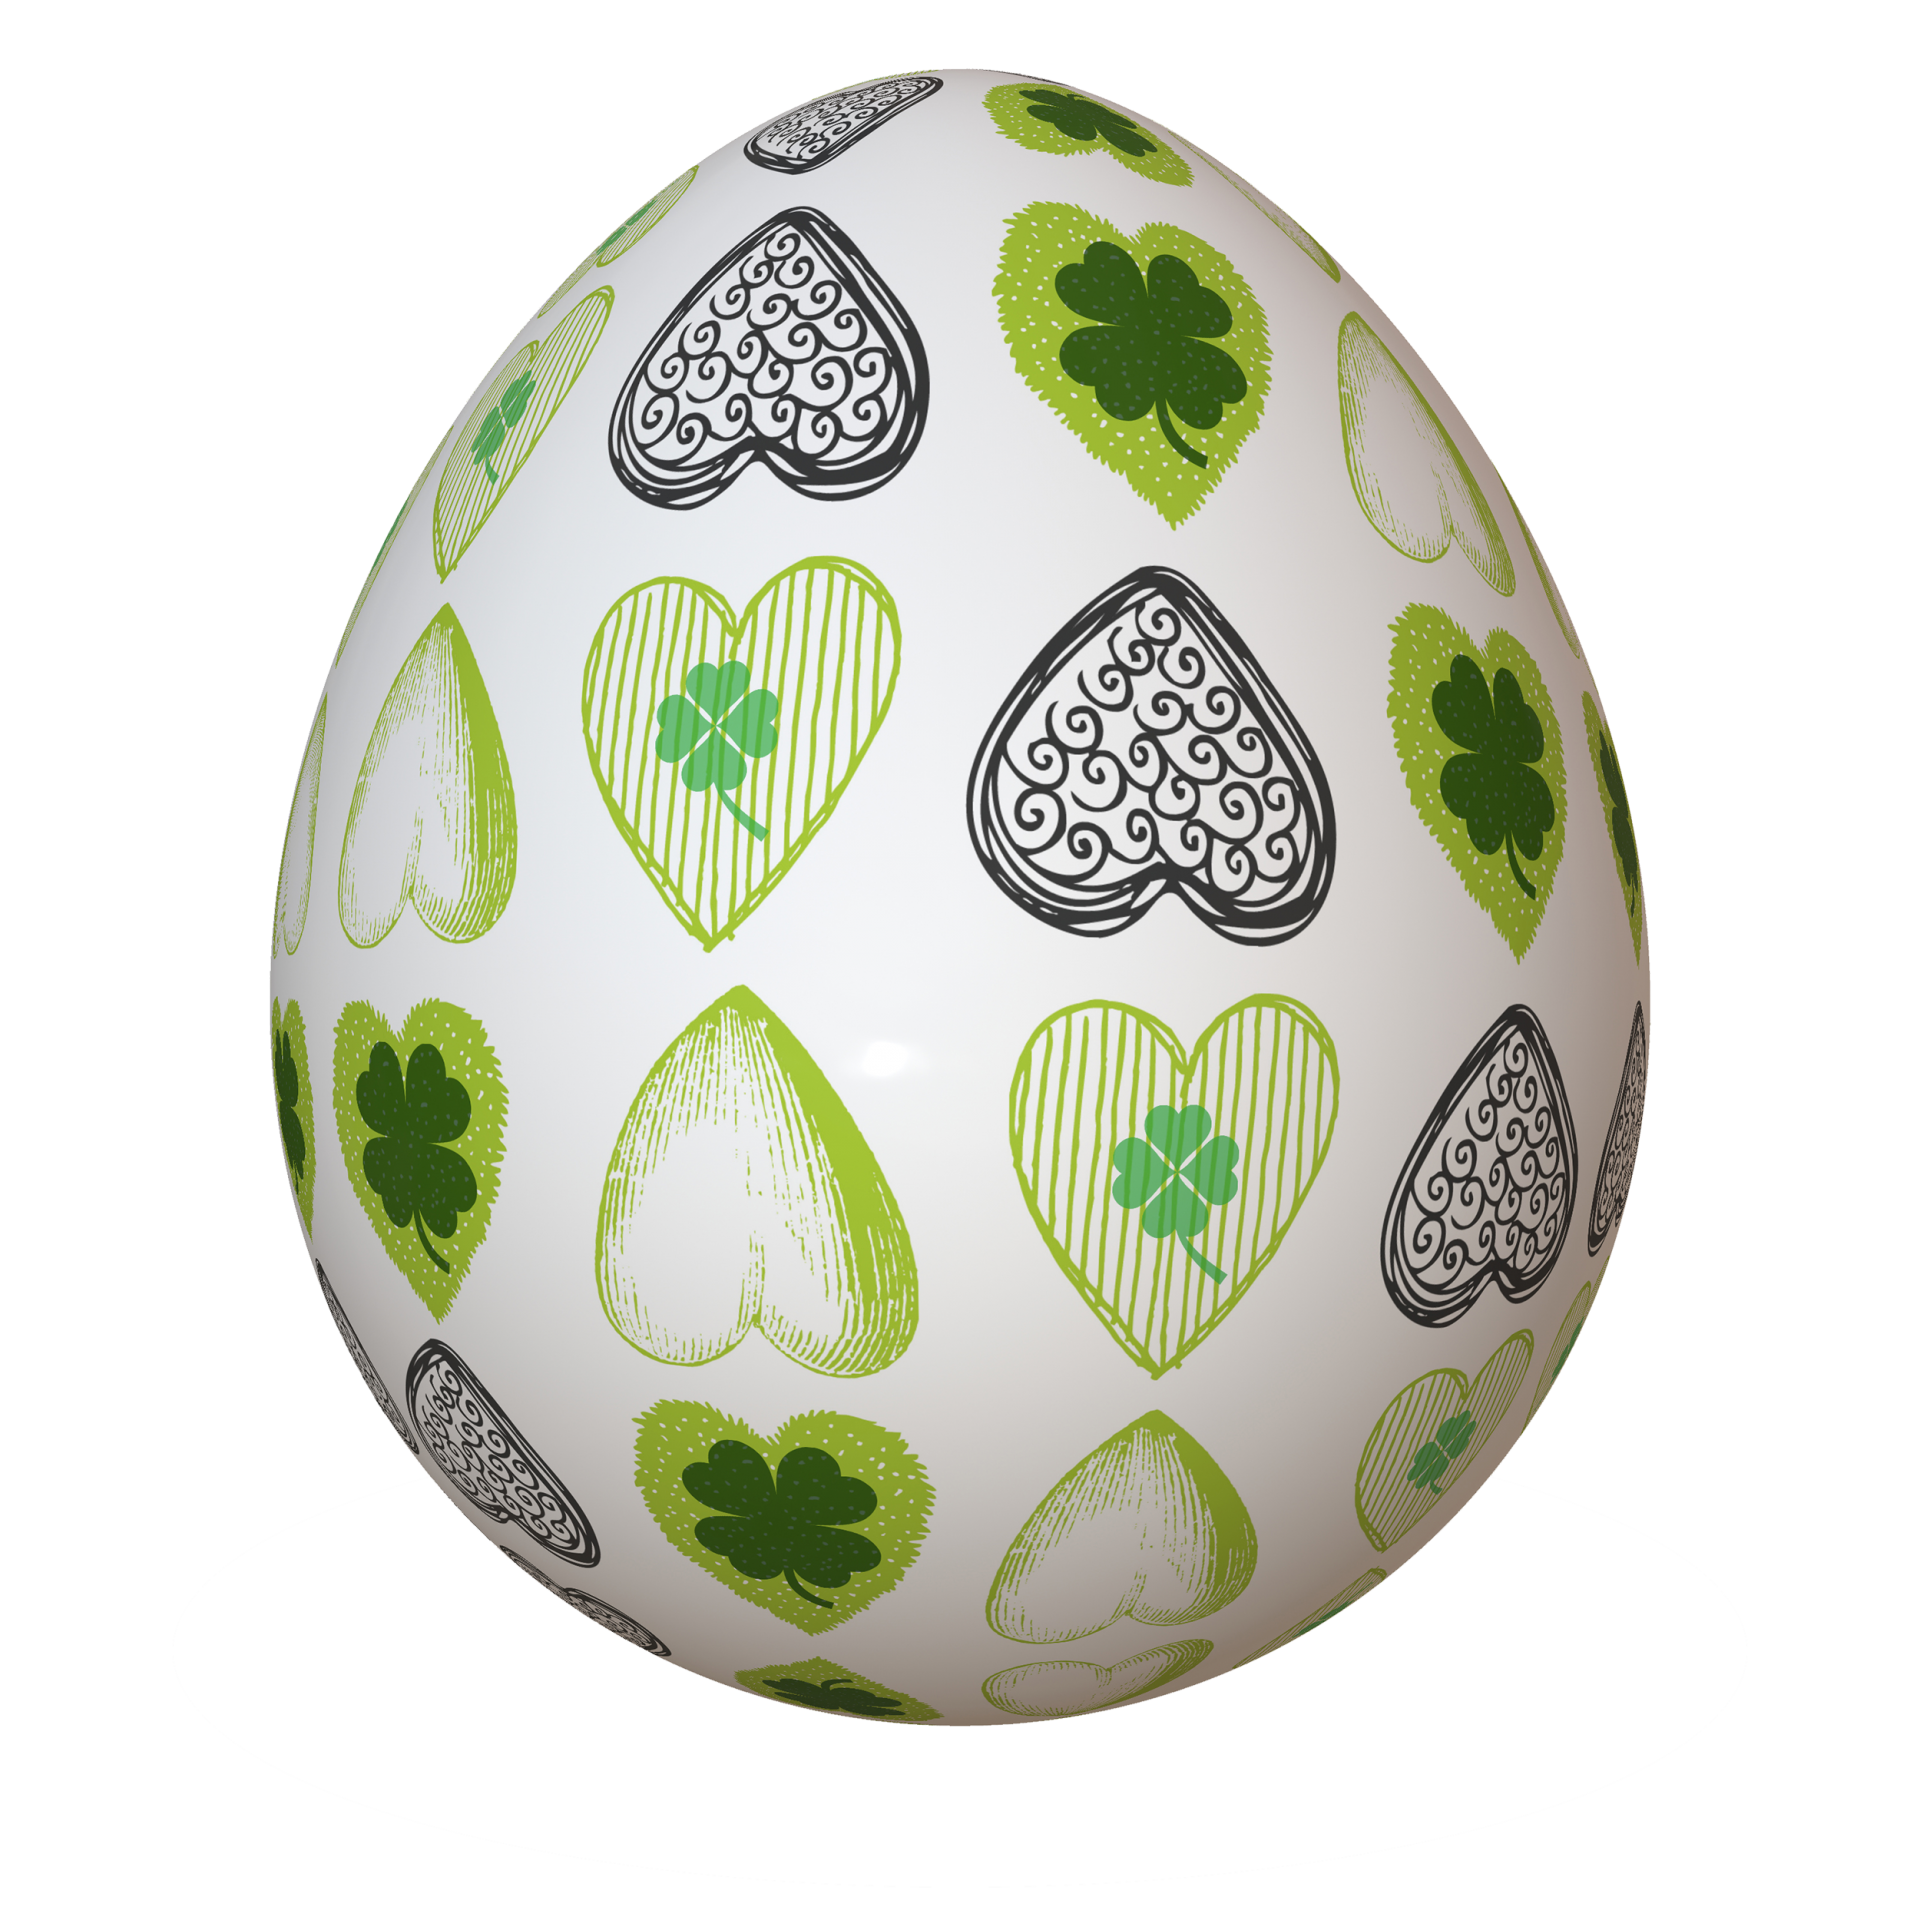 St. Patrick's Day Egg